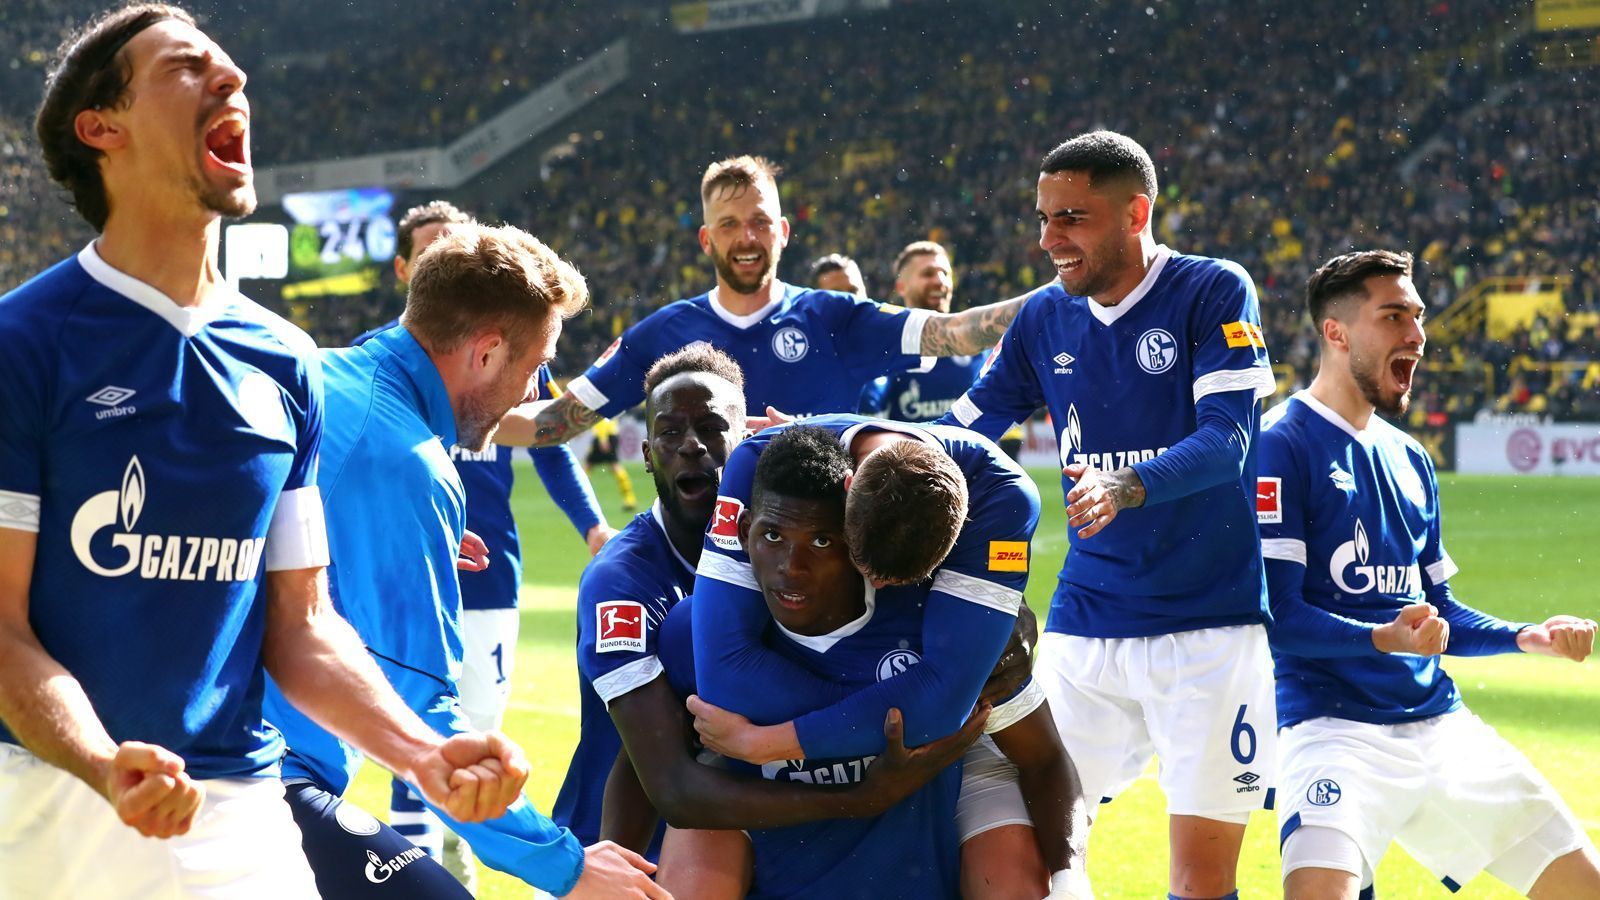 
                <strong>Saison 2018/19: Schalke triumphiert in Dortmund</strong><br>
                Am 31. Spieltag der Saison 2018/19 geht der FC Schalke 04 etwas überraschend als Sieger hervor. Die damals immer noch im Abstiegskampf involvierten "Knappen" gewinnen das Prestige-Duell auswärts beim BVB mit 4:2 und legen damit den Grundstein für den späteren Klassenerhalt. Borussia Dortmund, das früh durch Mario Götze in Führung ging, verspielt nicht nur dieses 1:0, sondern möglicherweise auch entscheidende Punkte im Titel-Fernduell mit den Bayern.
              